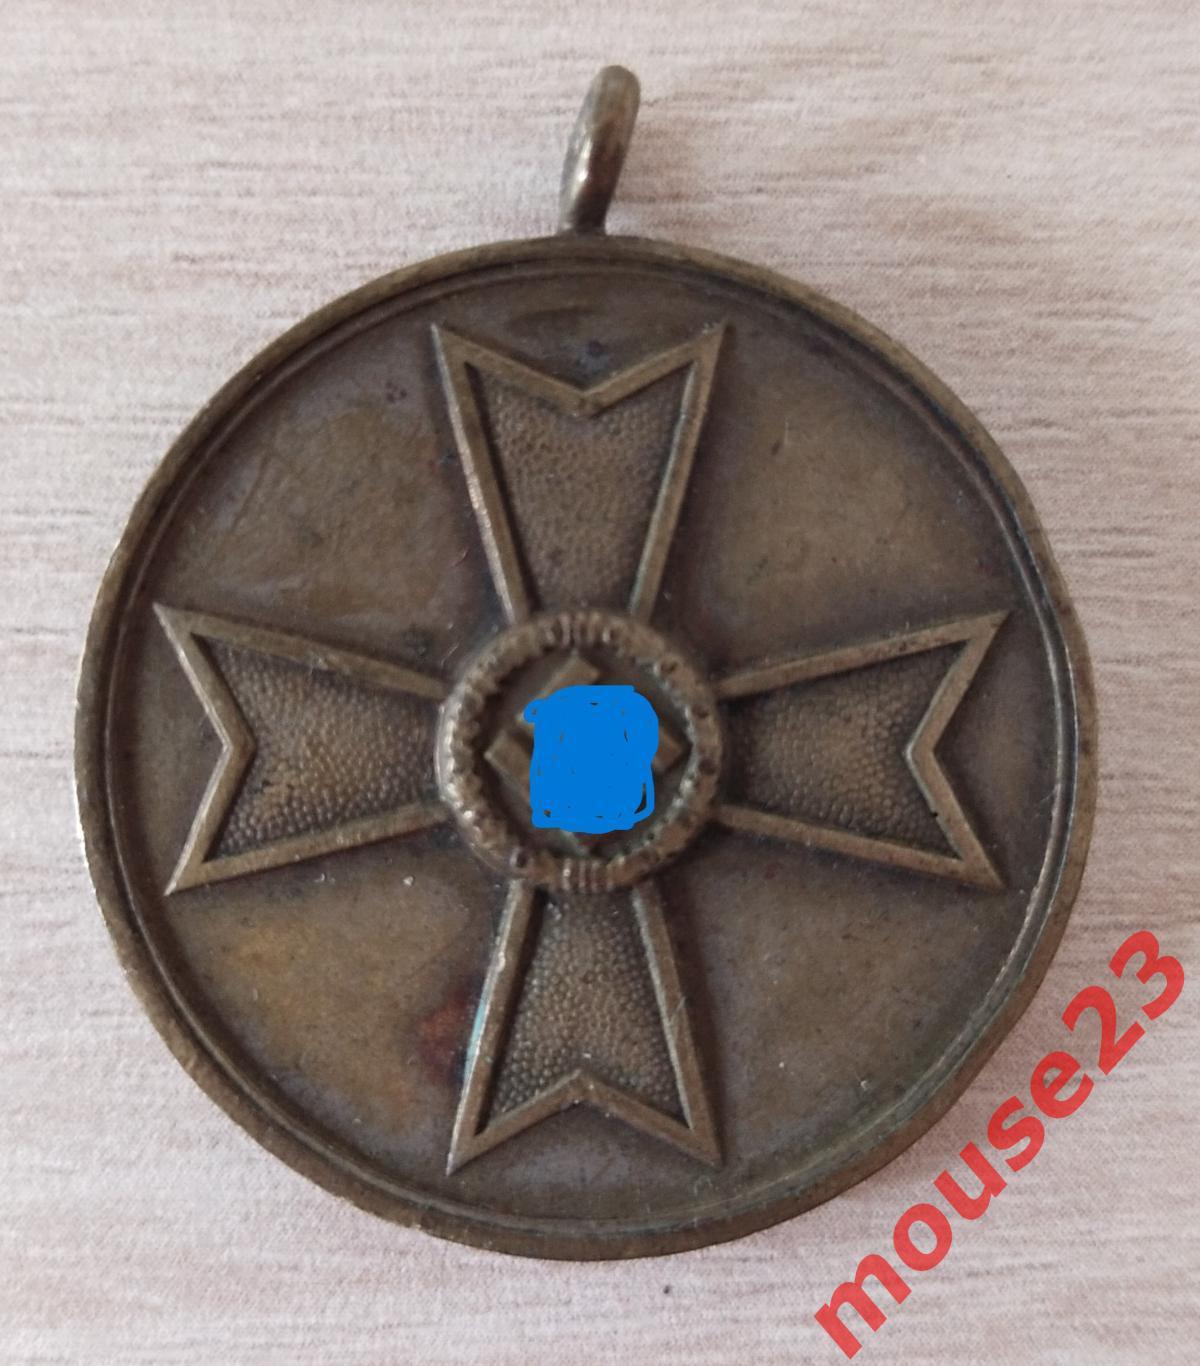 3-й Рейх Медаль Креста за Военные Заслуги